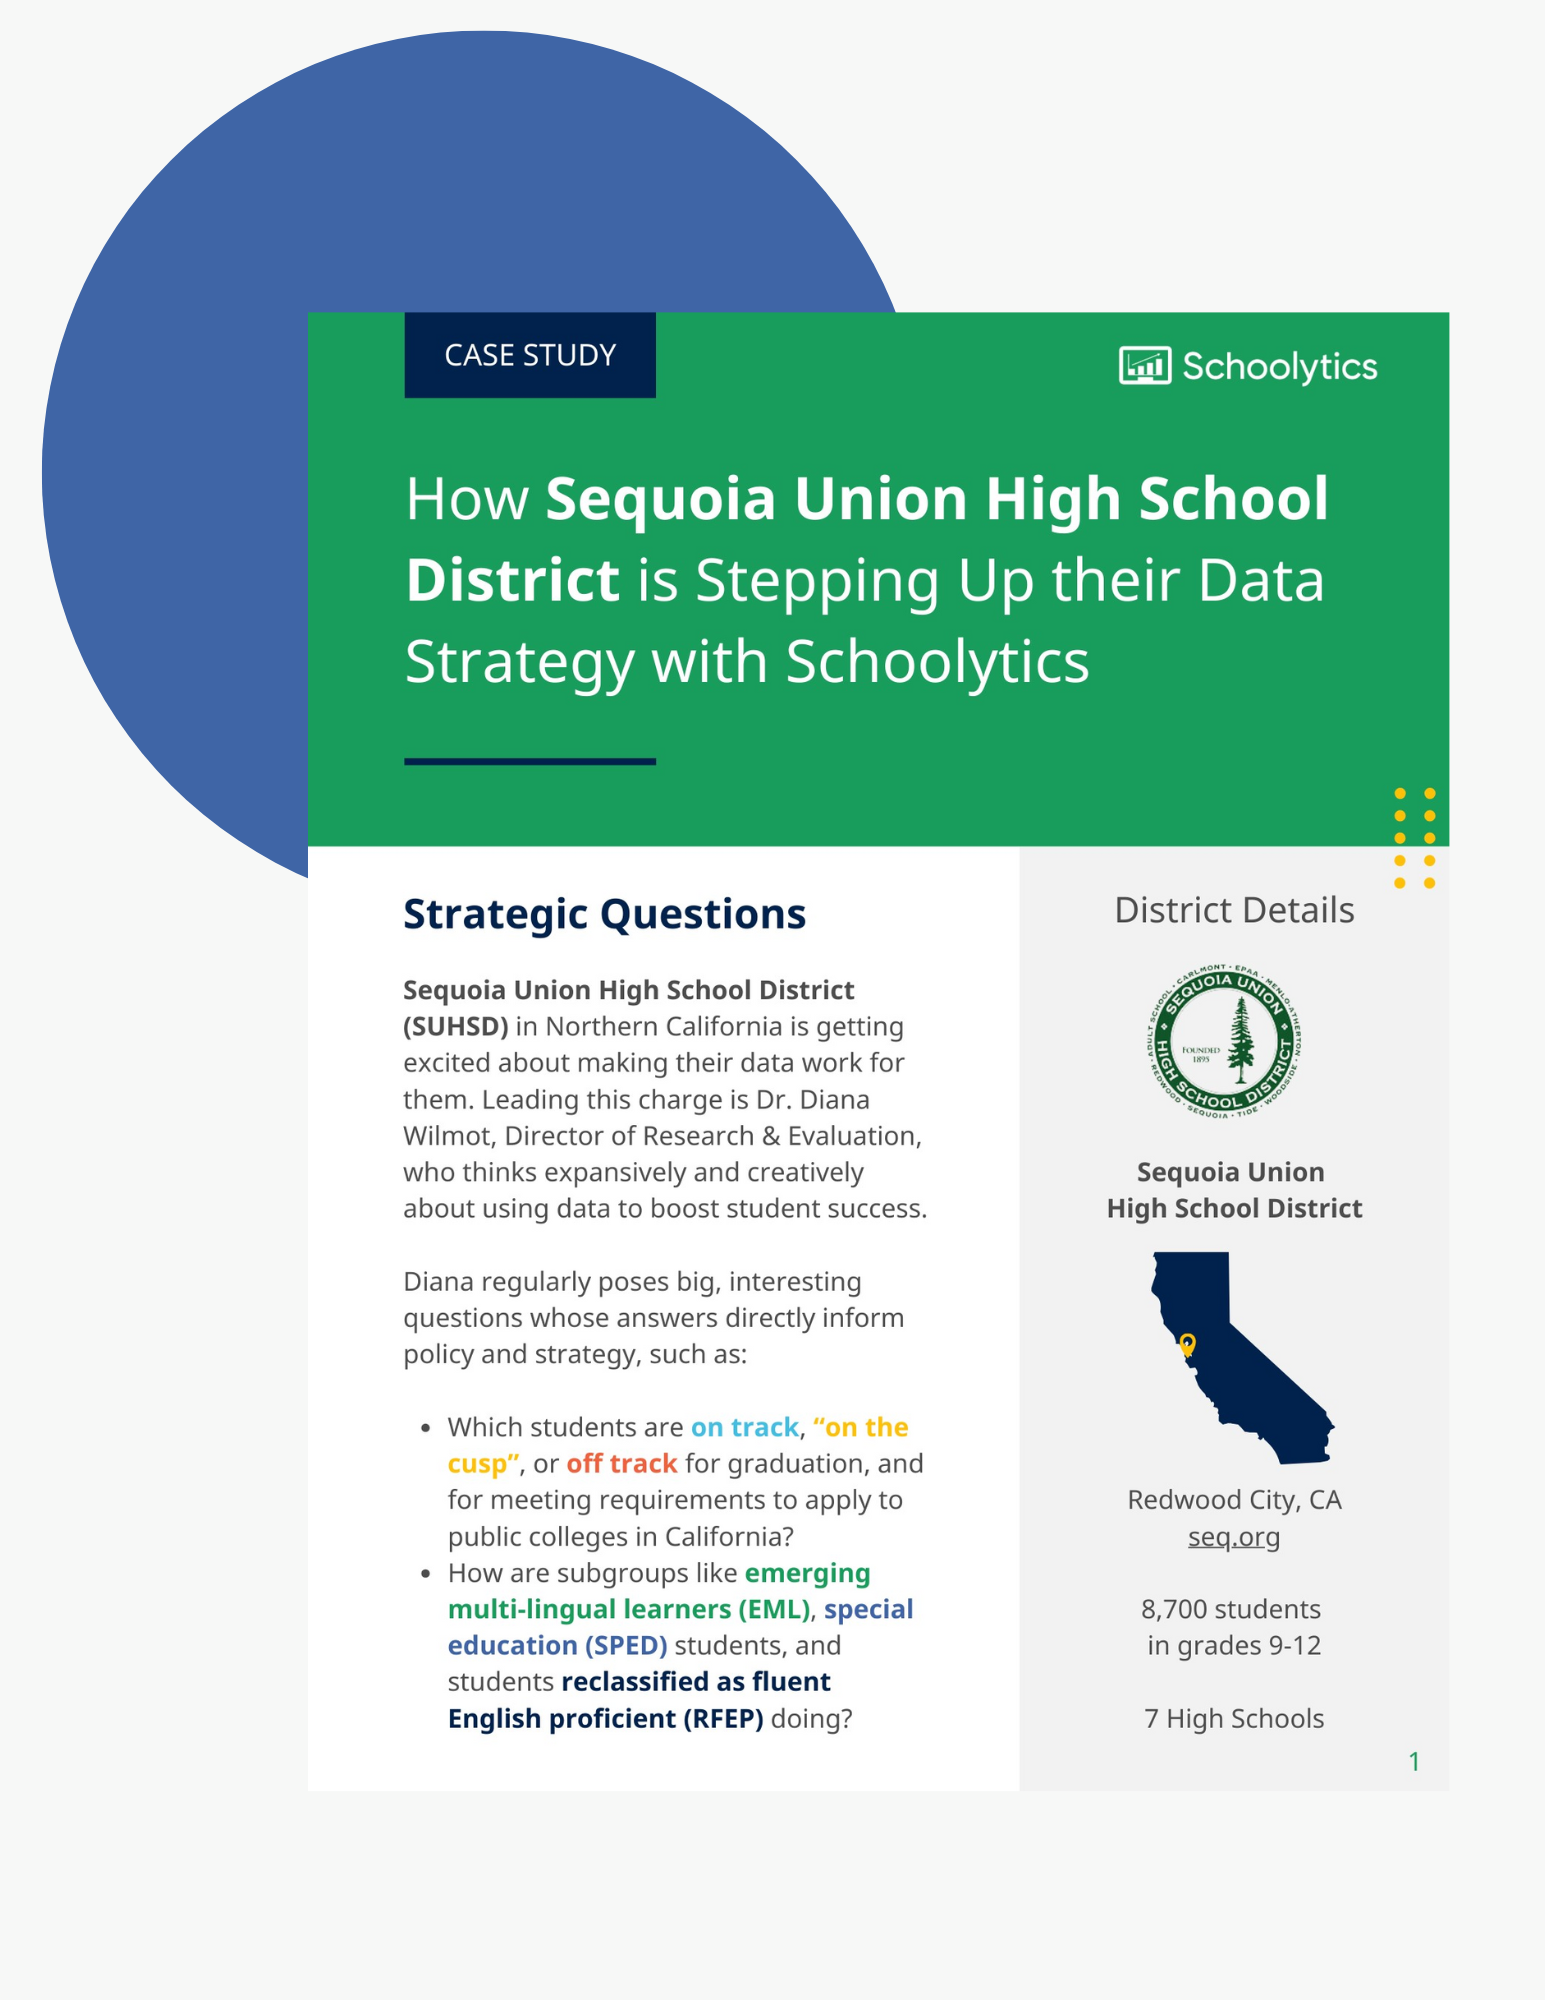 sequoia-case-study-hero-image